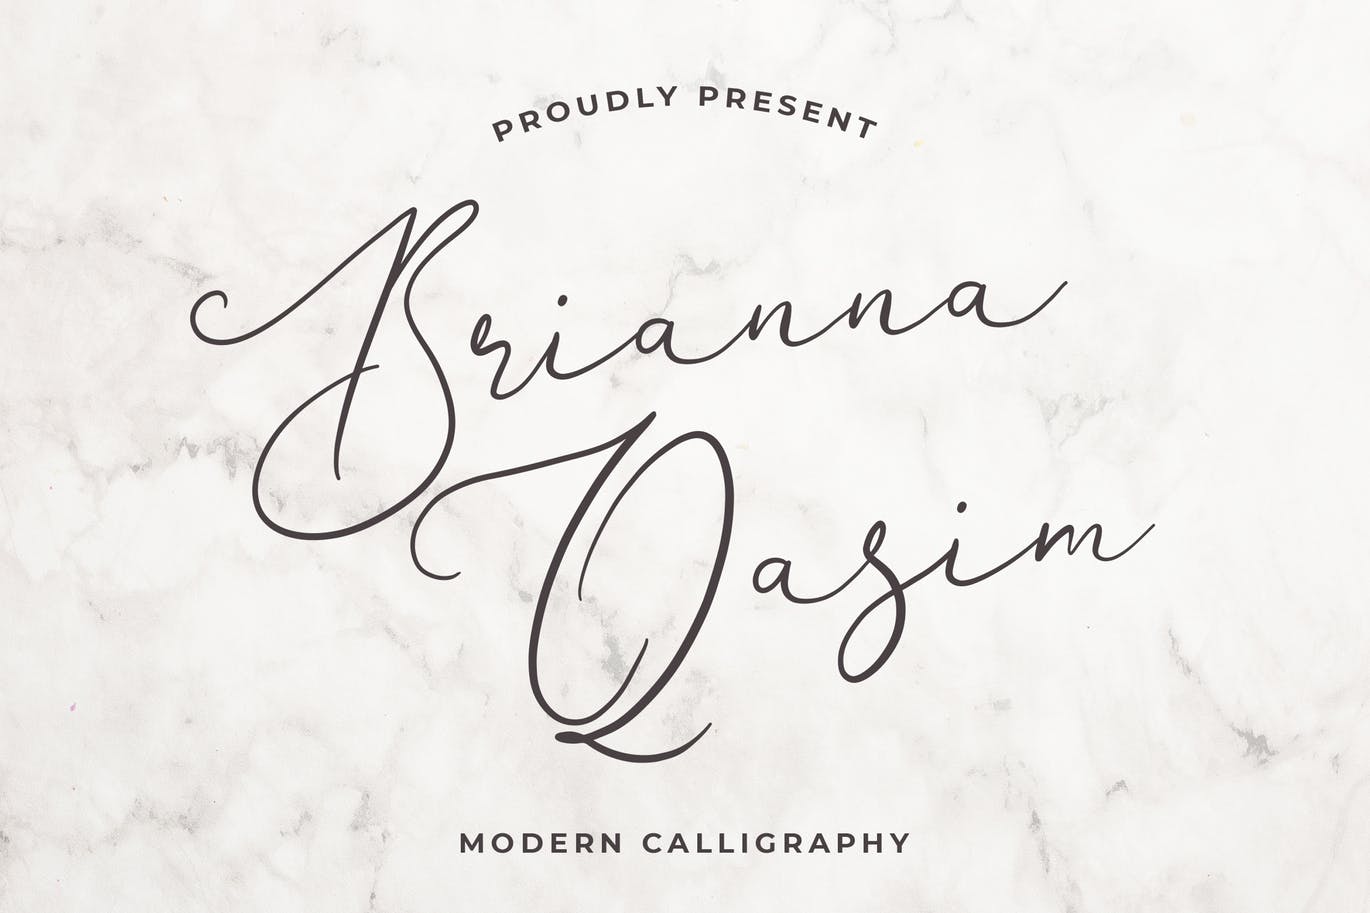 独特手写连笔书法英文字体16图库精选 Brianna Qasim Beautiful Calligraphy Font插图